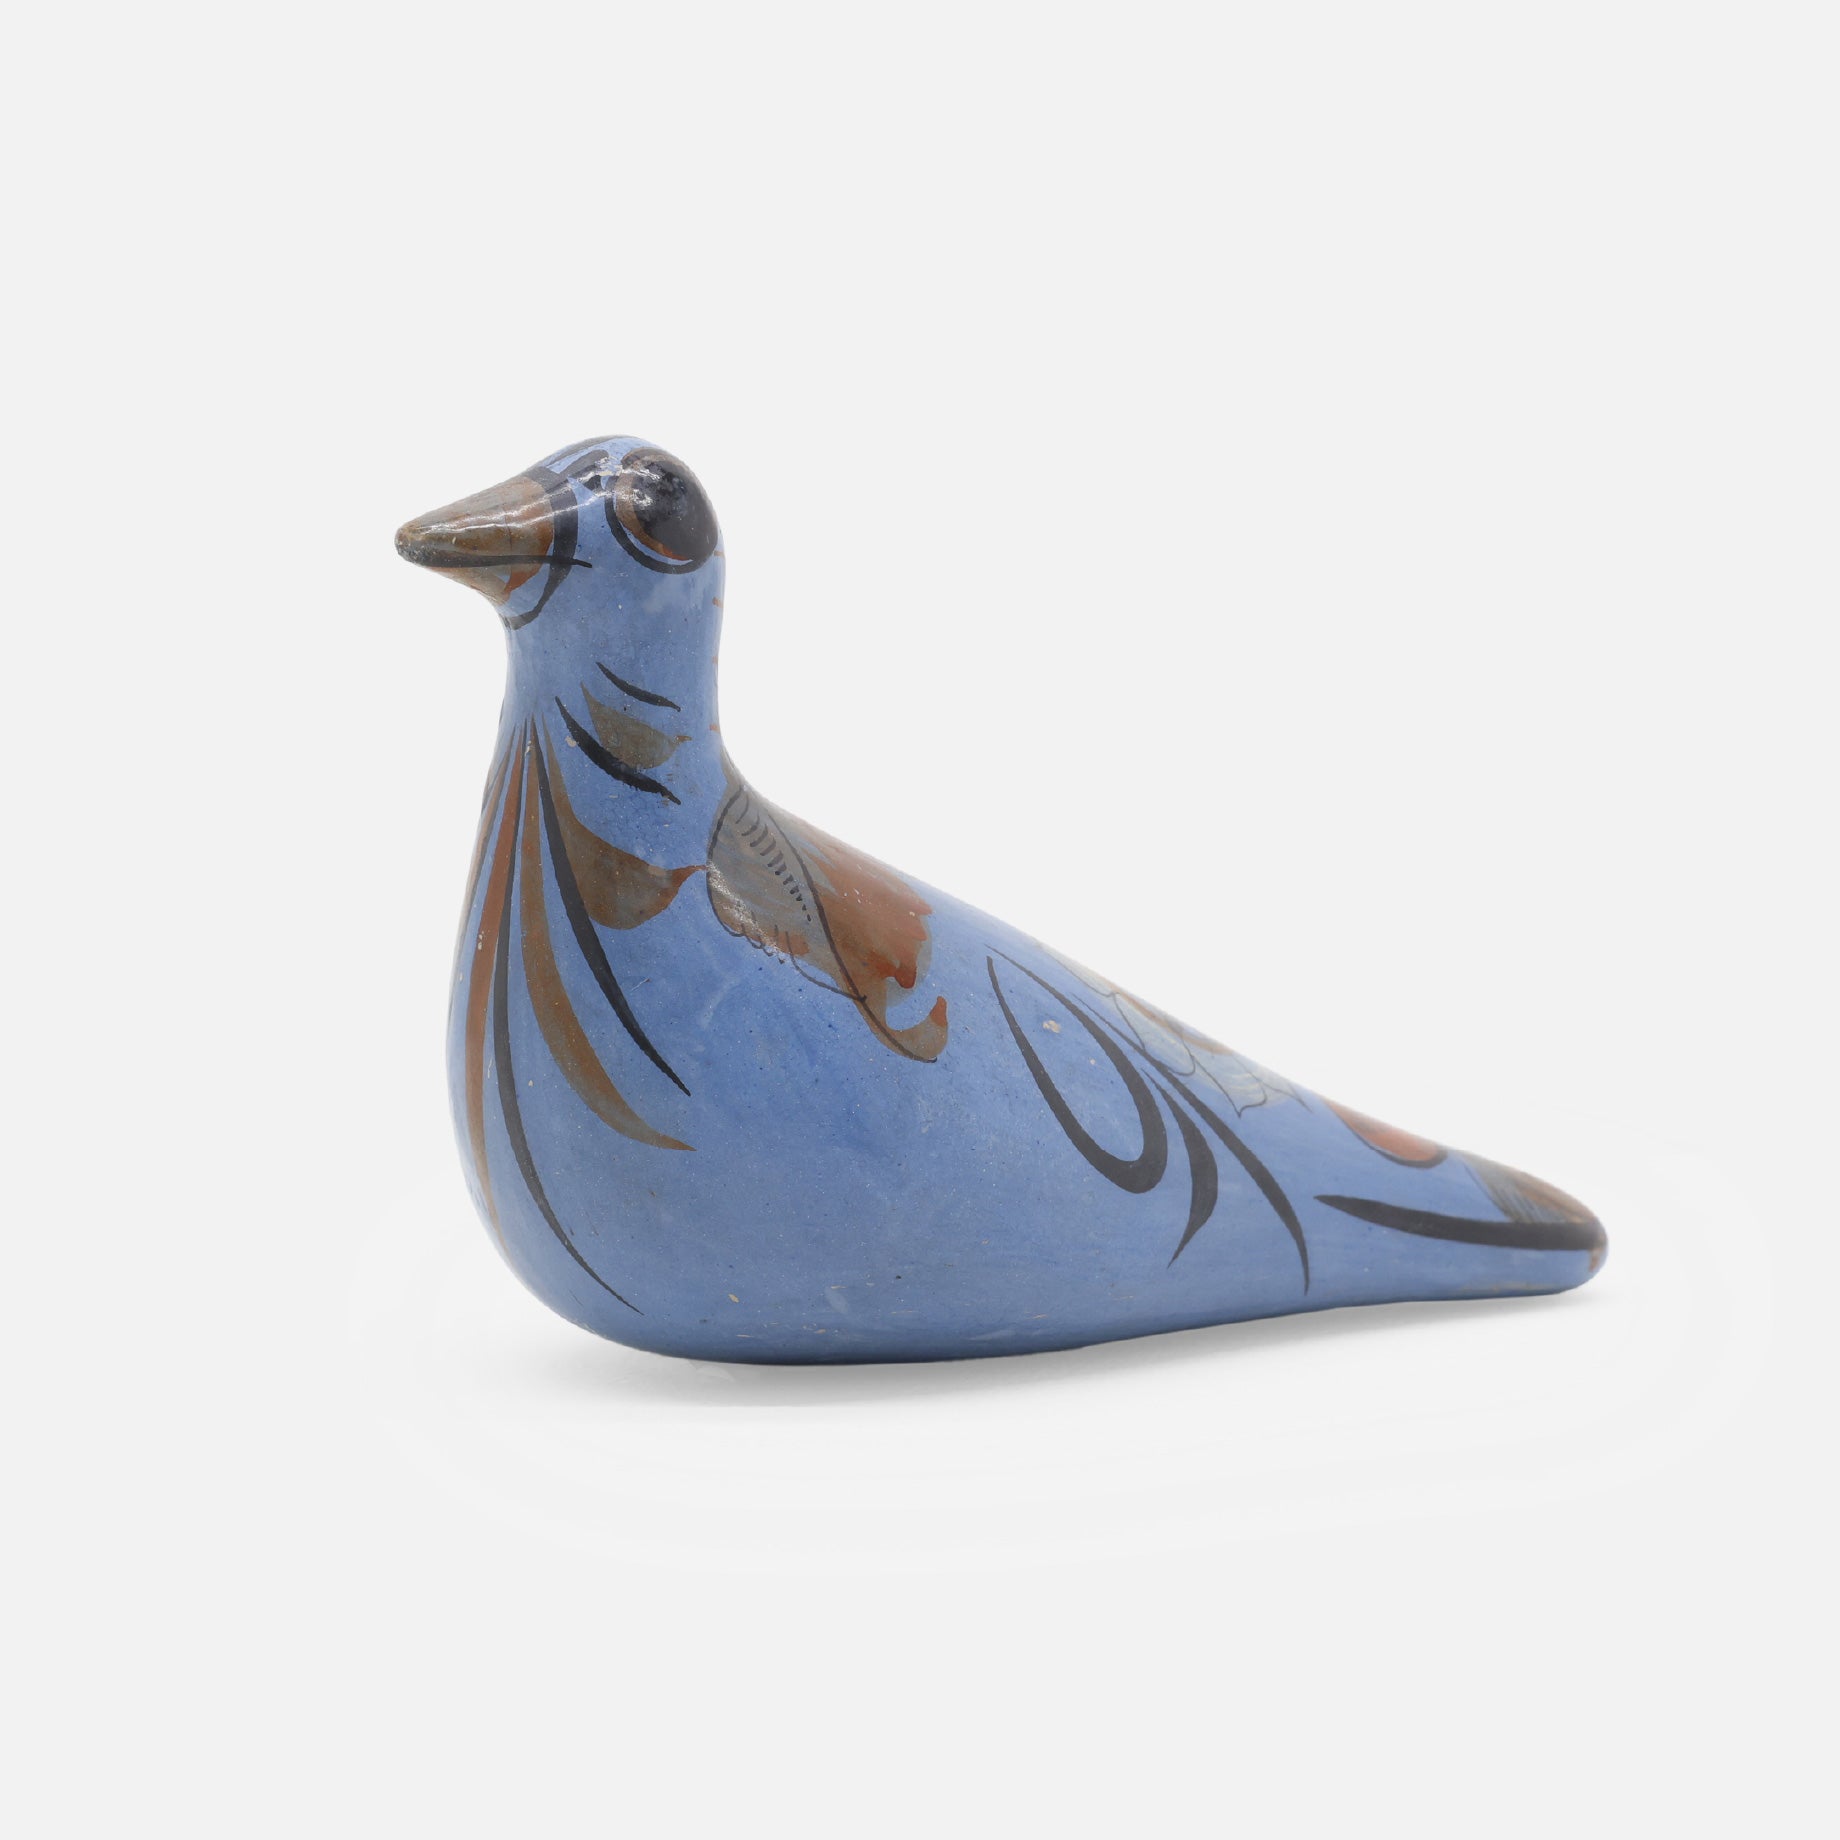 VINTAGE FOLK ART POTTERY BIRD（BLUE）